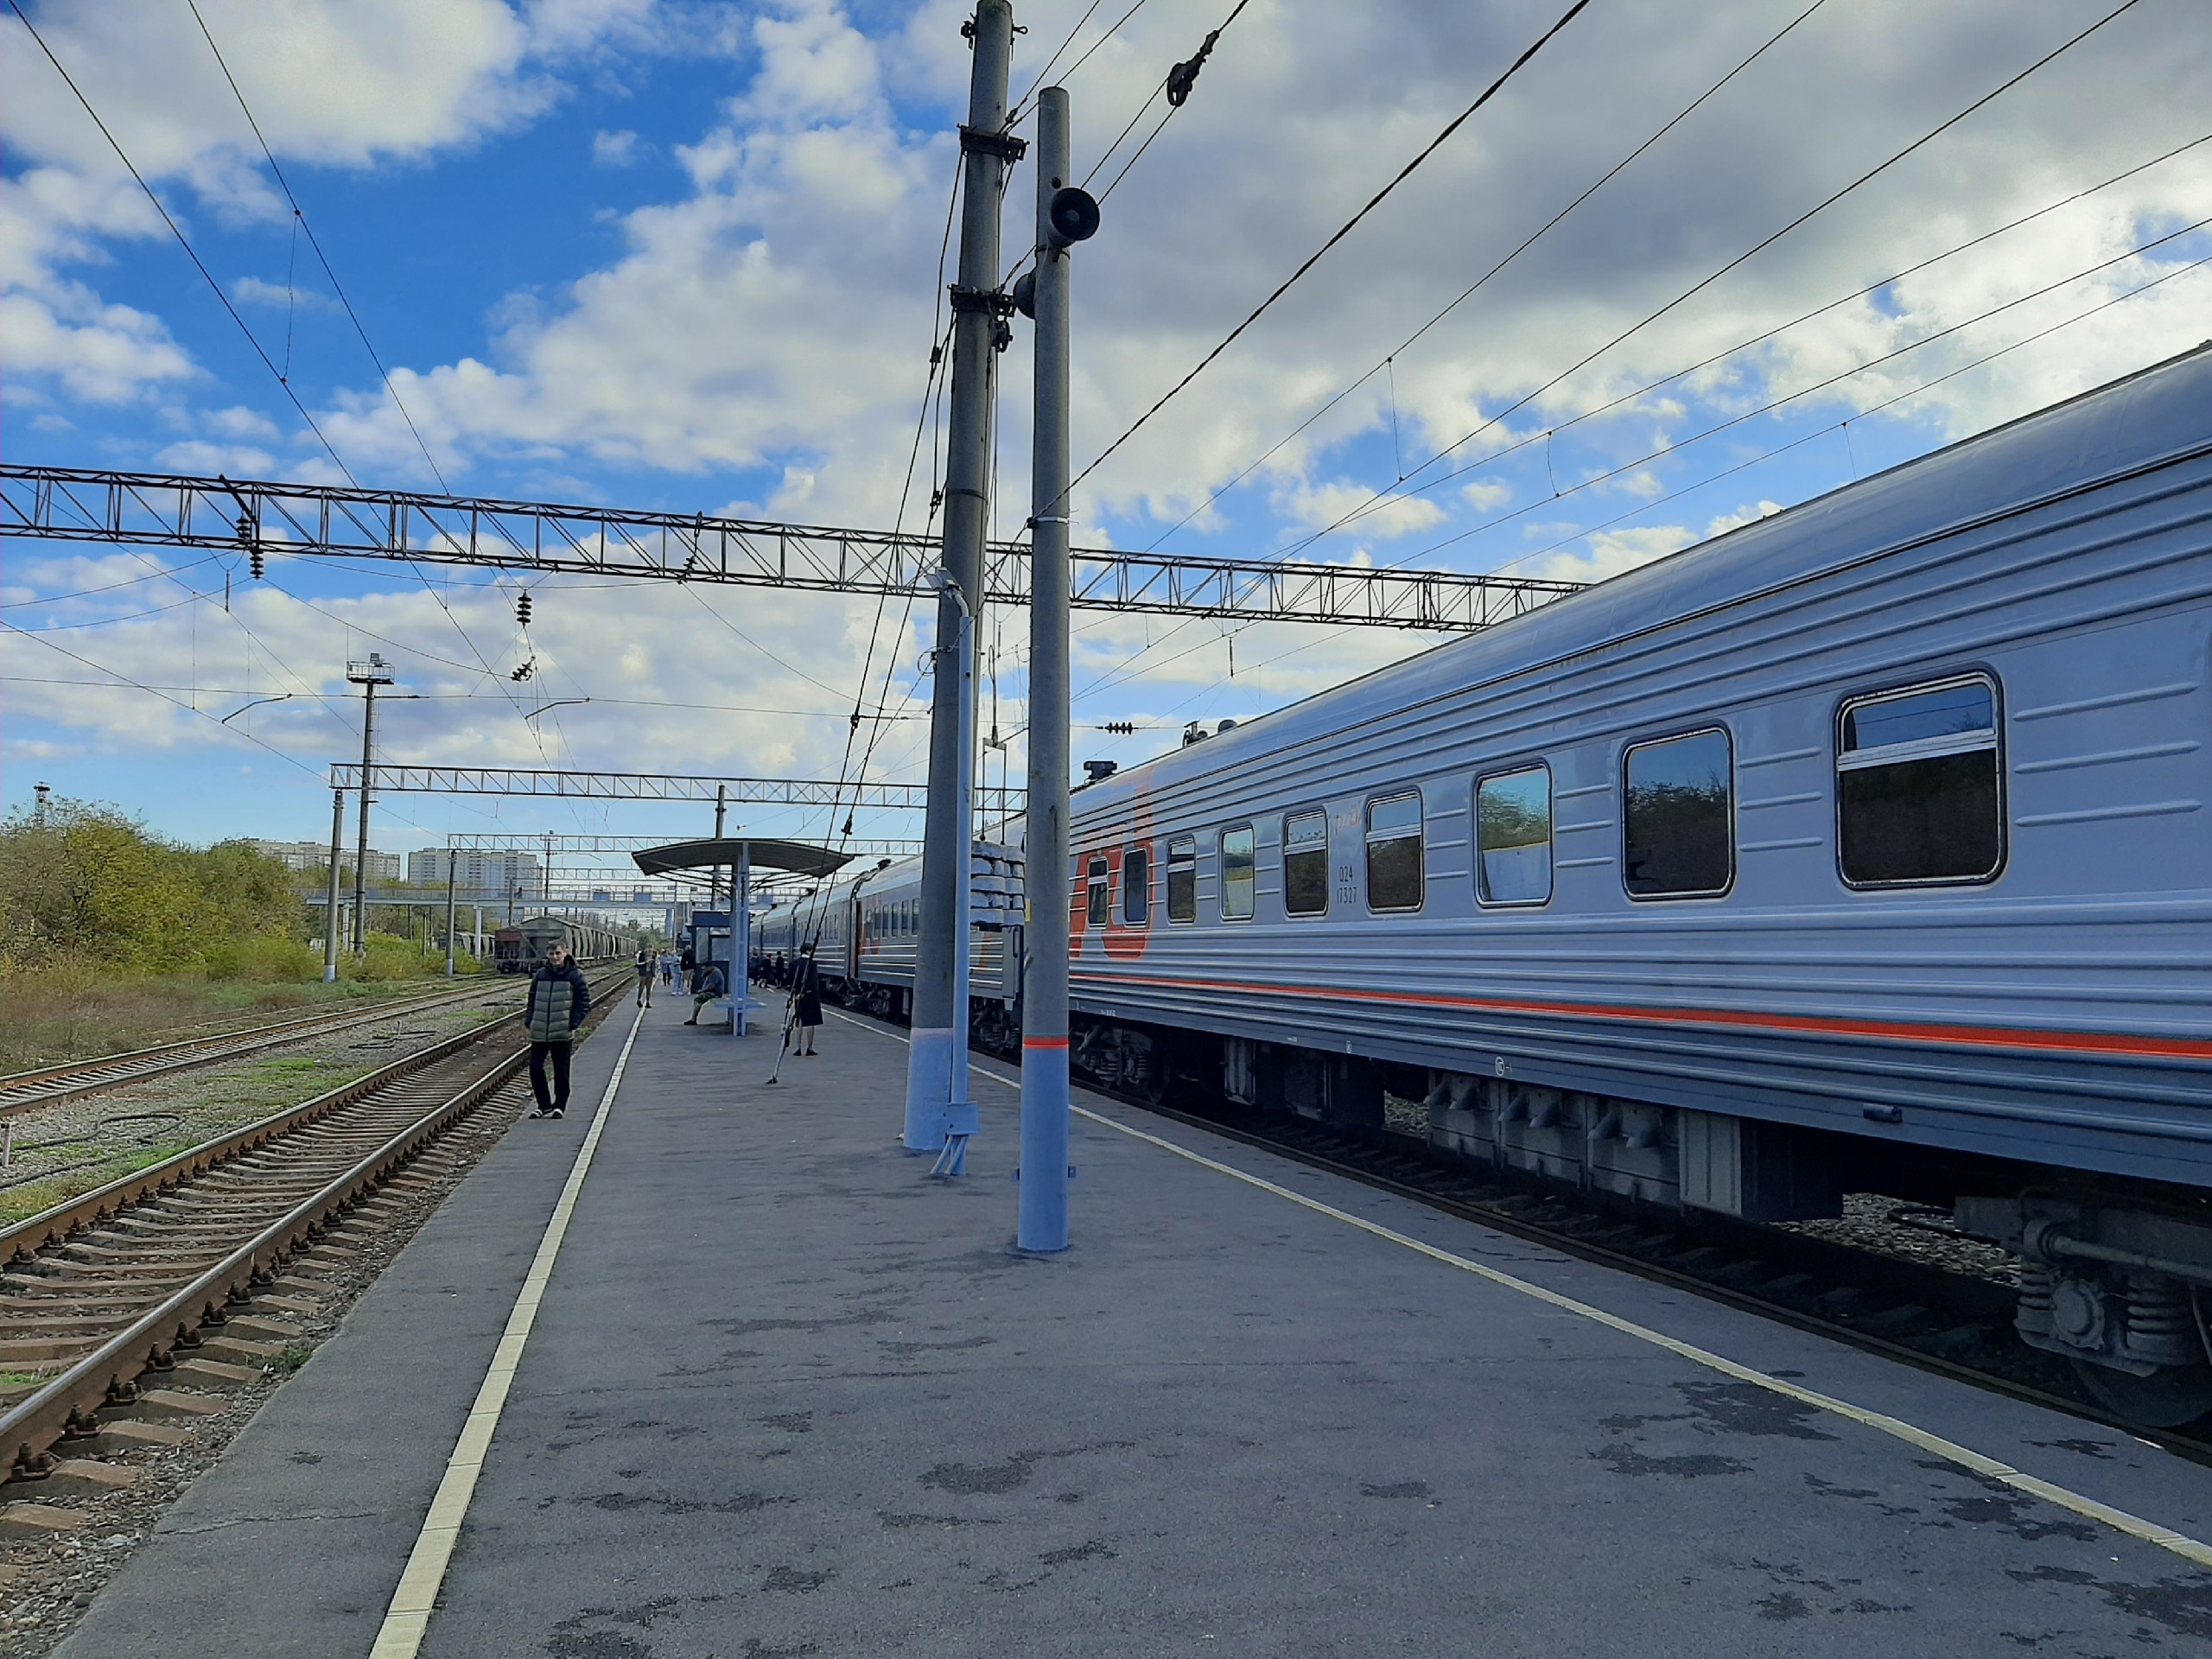 Могут выкинуть из поезда: новые запреты в вагонах от РЖД возмутили пассажиров